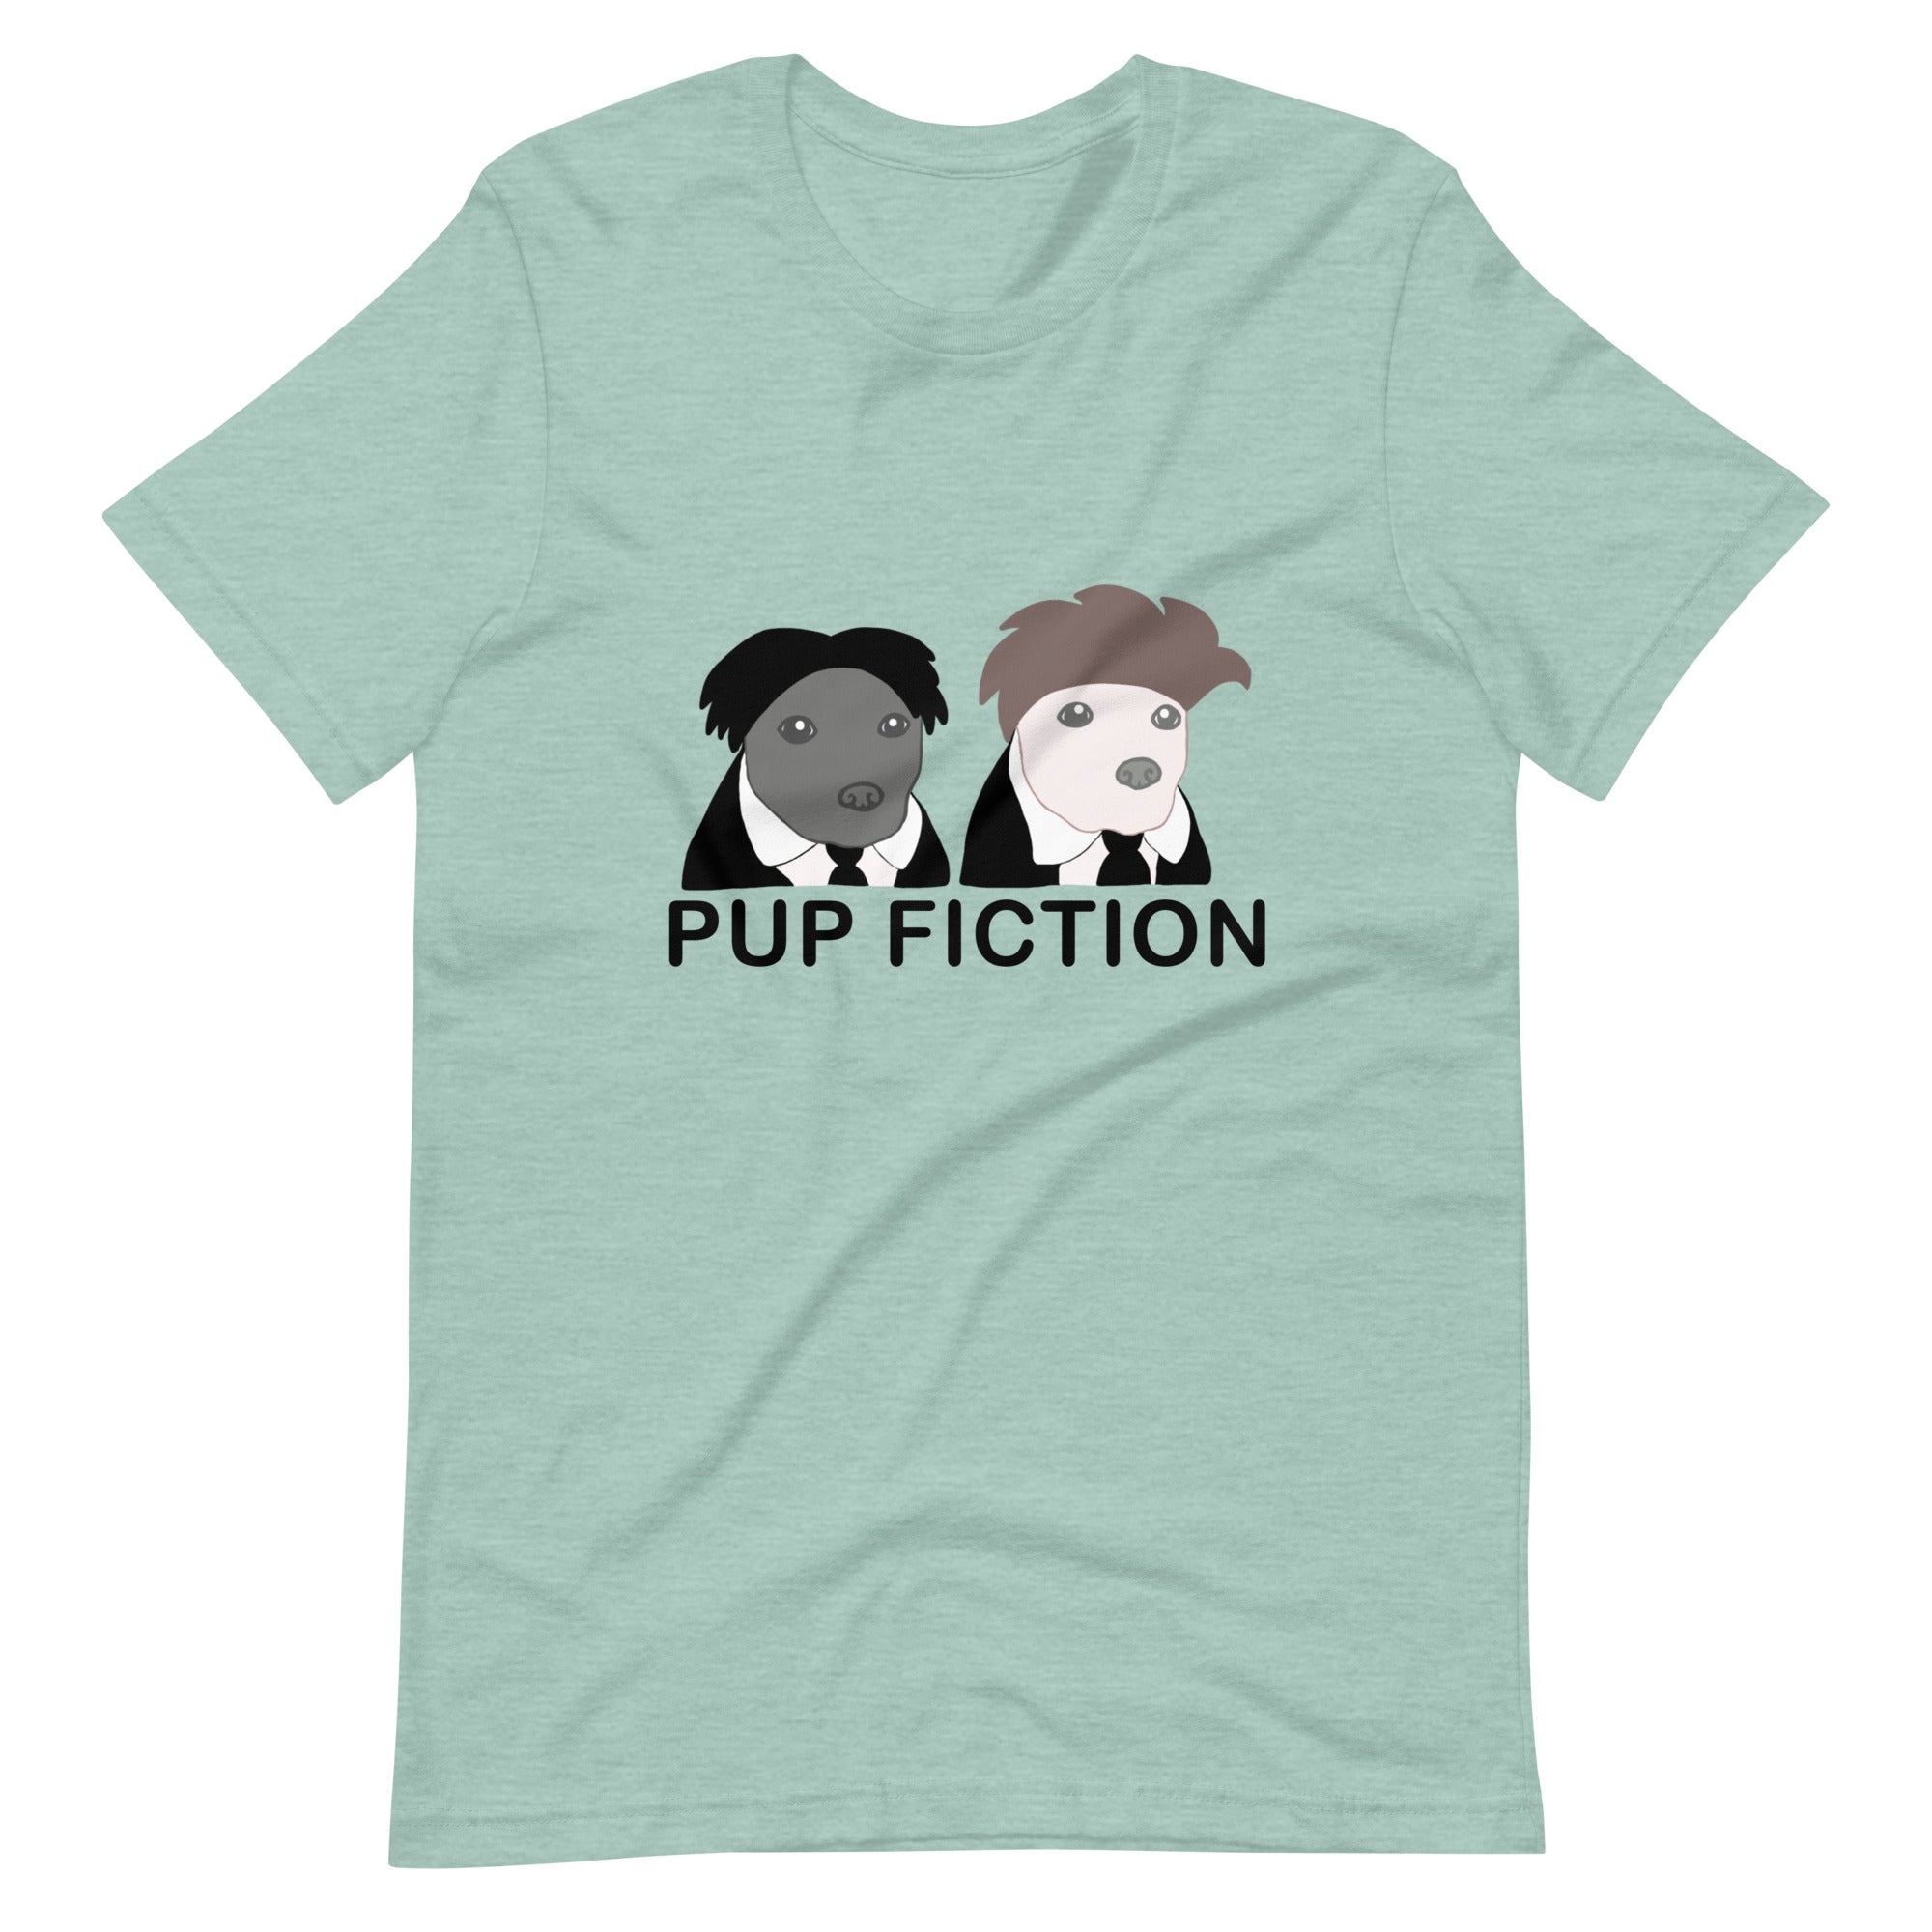 "Pup Fiction" Adult Unisex t-shirt